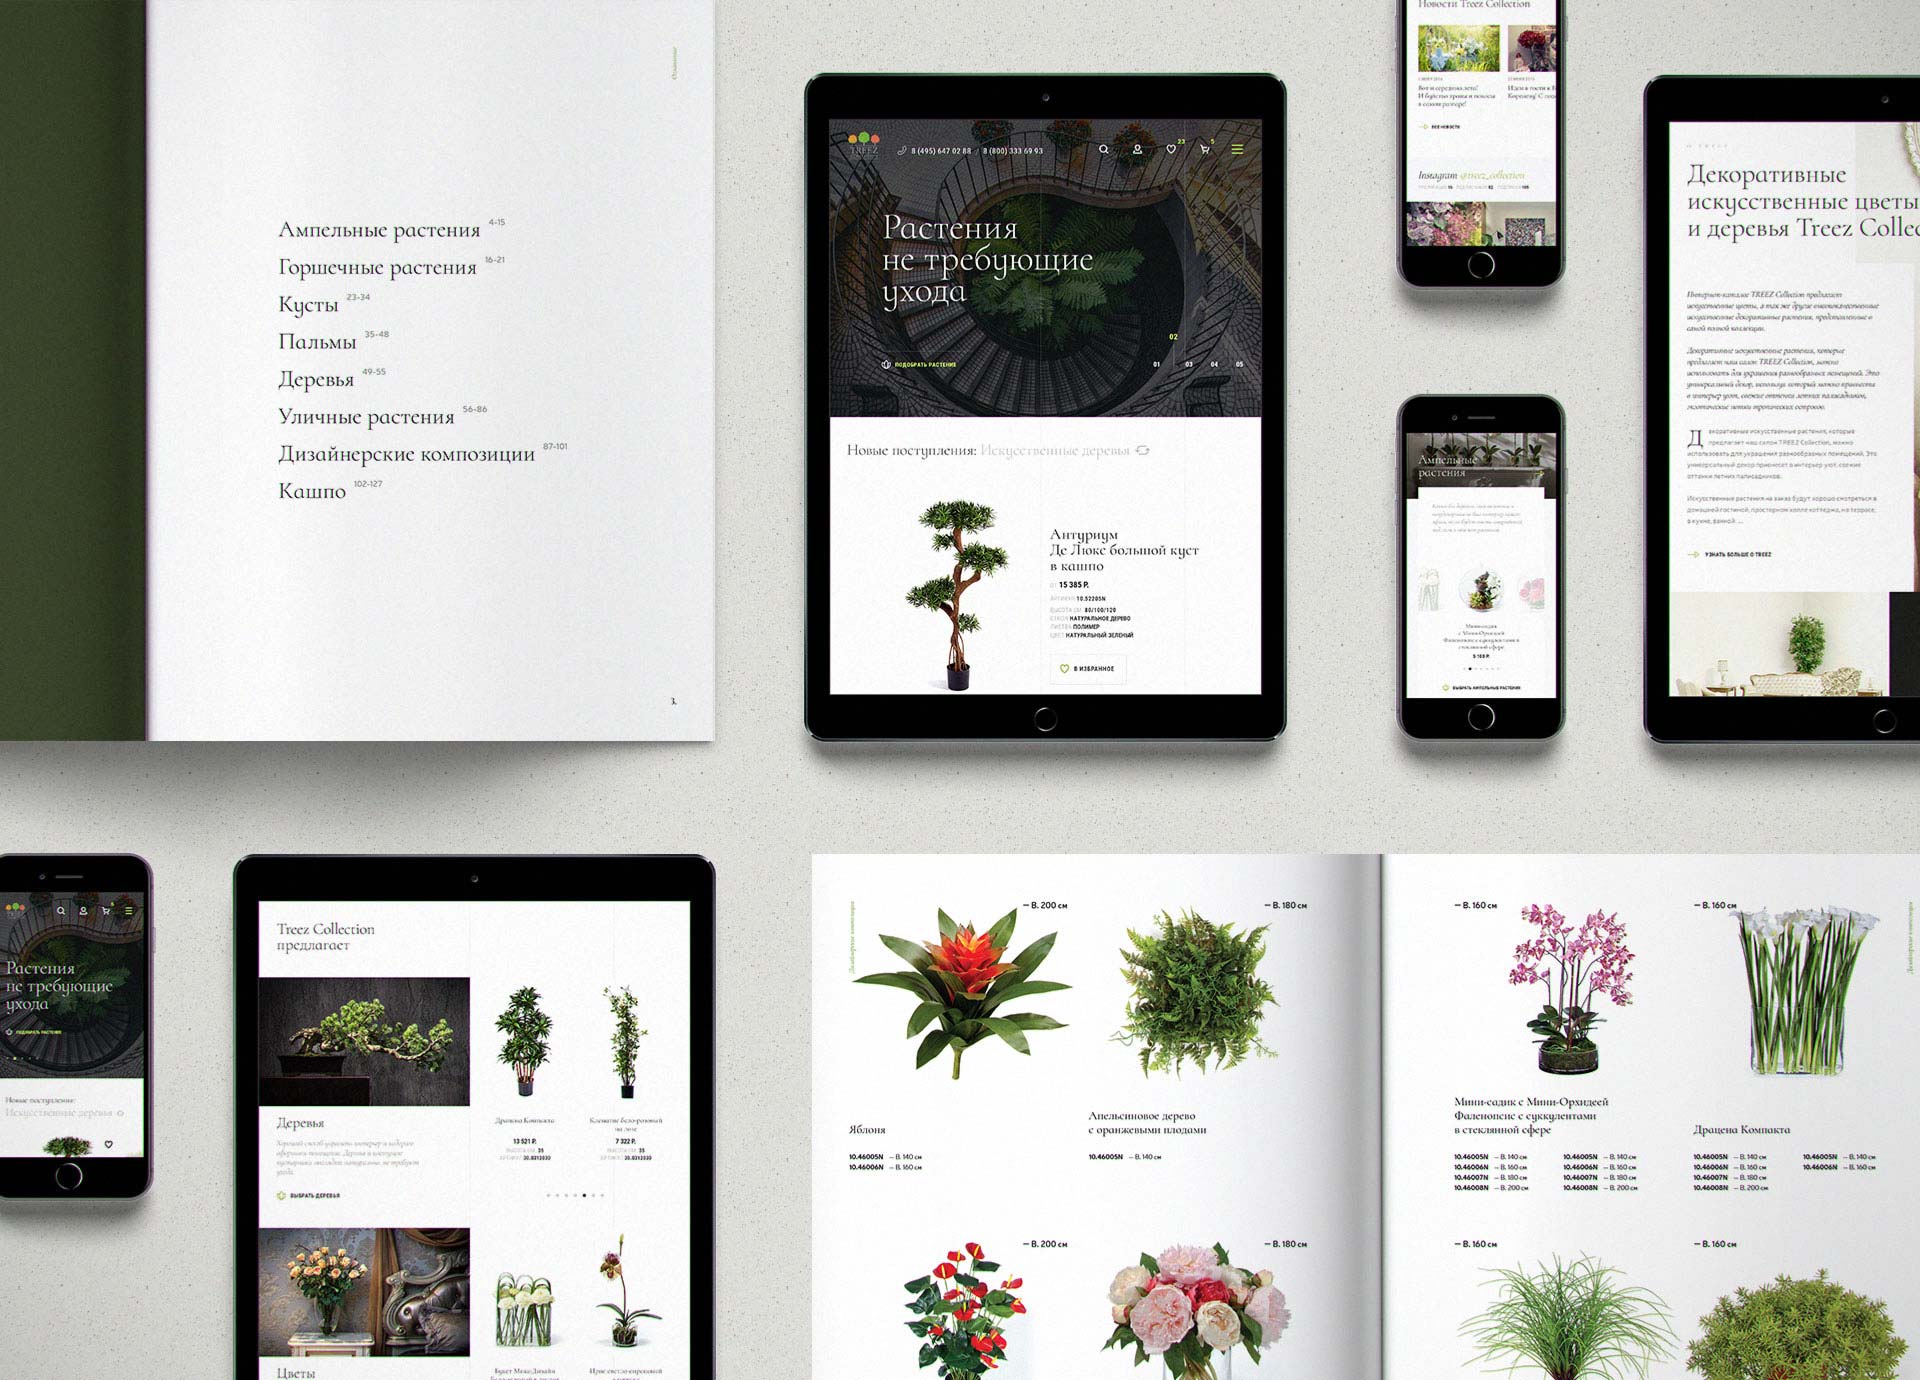 Дизайн интернет-магазина Treez Collection на мобильных устройствах.